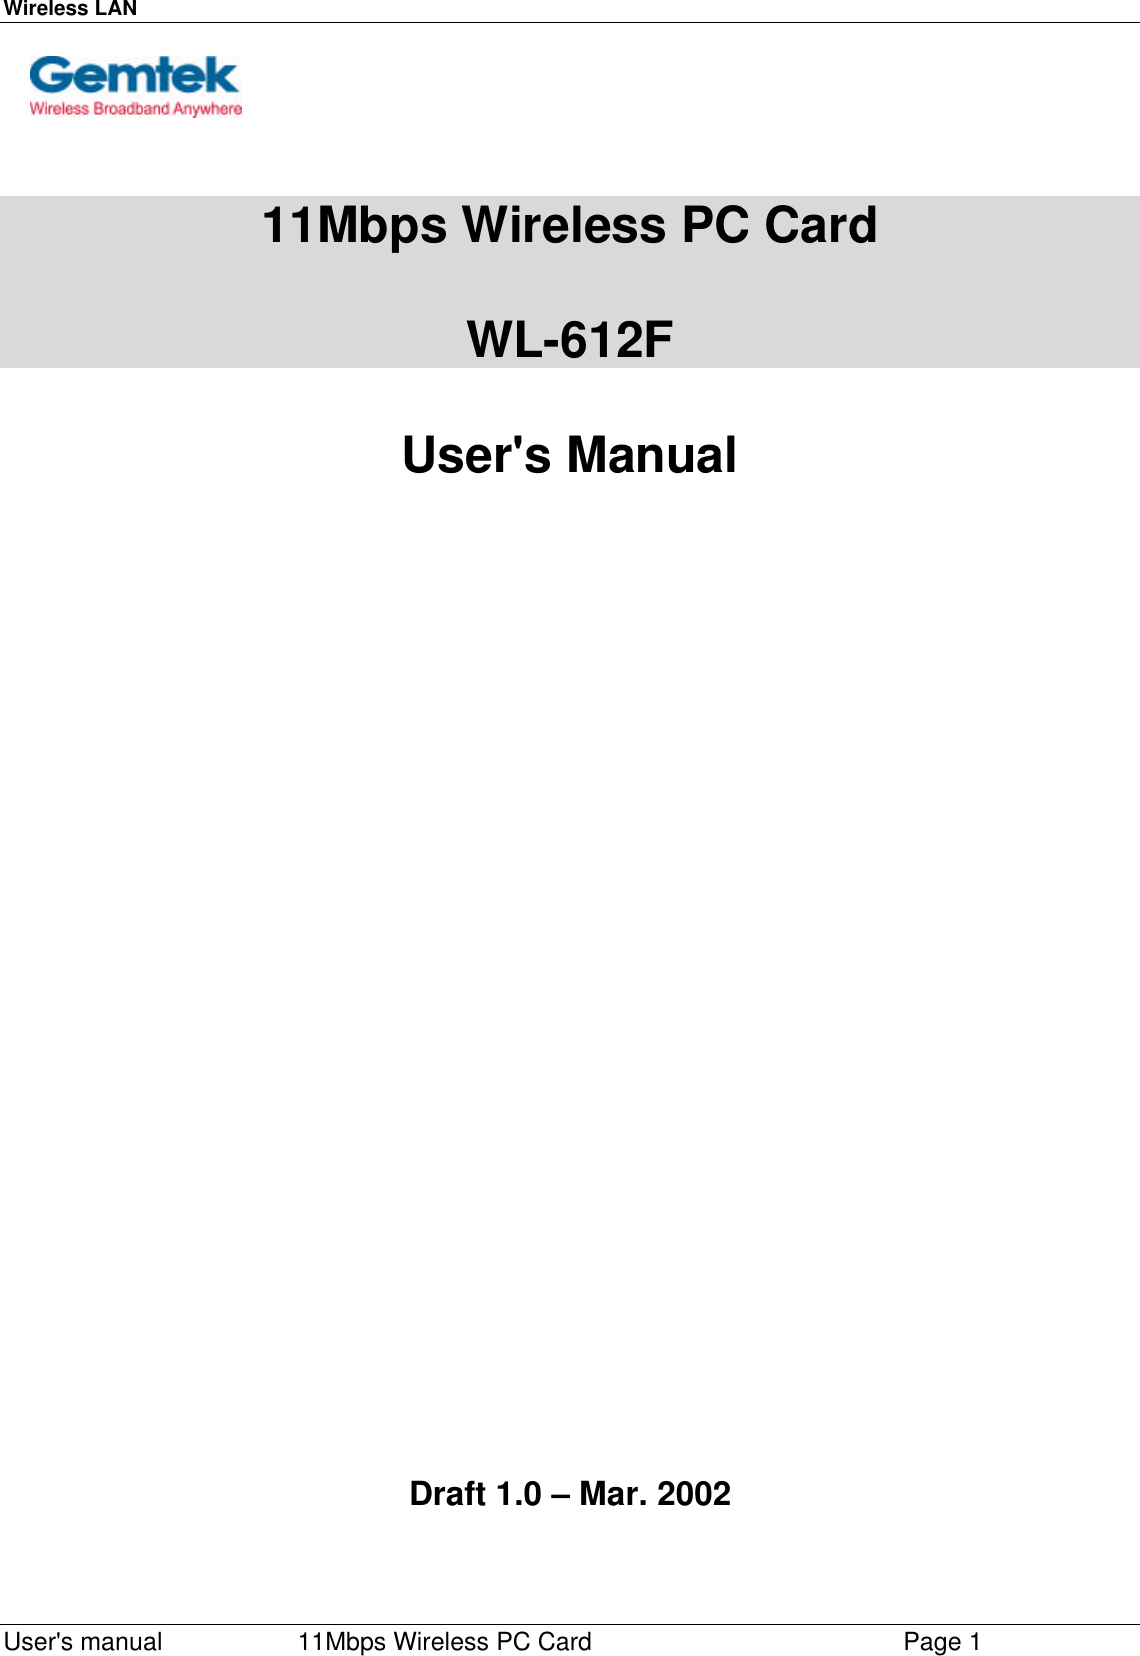 Wireless LAN    User&apos;s manual         11Mbps Wireless PC Card        Page 1     11Mbps Wireless PC Card  WL-612F  User&apos;s Manual                                    Draft 1.0 – Mar. 2002   